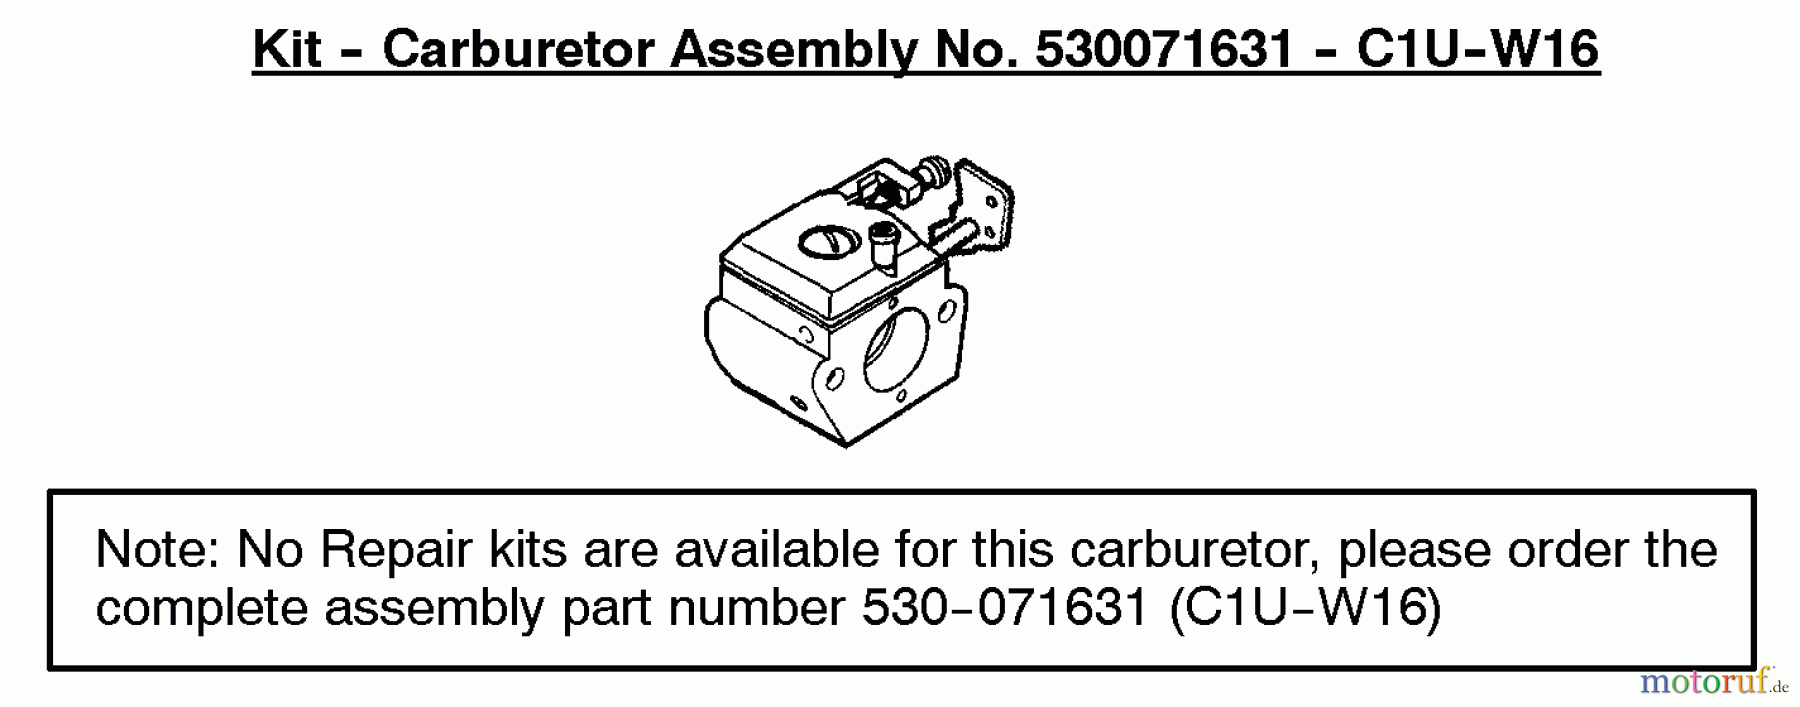  Poulan / Weed Eater Motorsensen, Trimmer BC2500LE (Type 1) - Weed Eater String Trimmer Carburetor Assembly (C1U-W16) 530071631